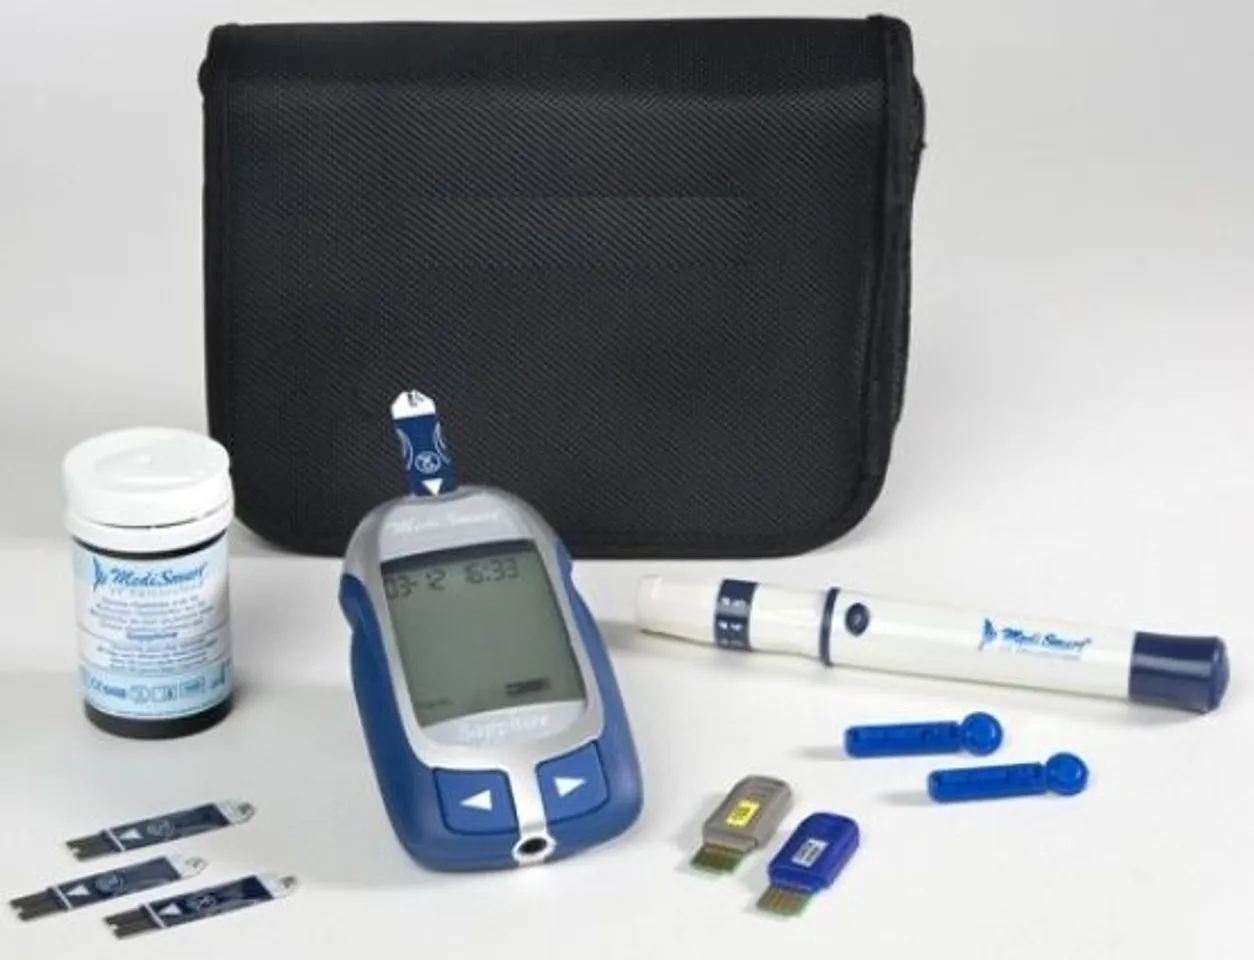 Máy đo đường huyết MediSmart Sapphire bao gồm: